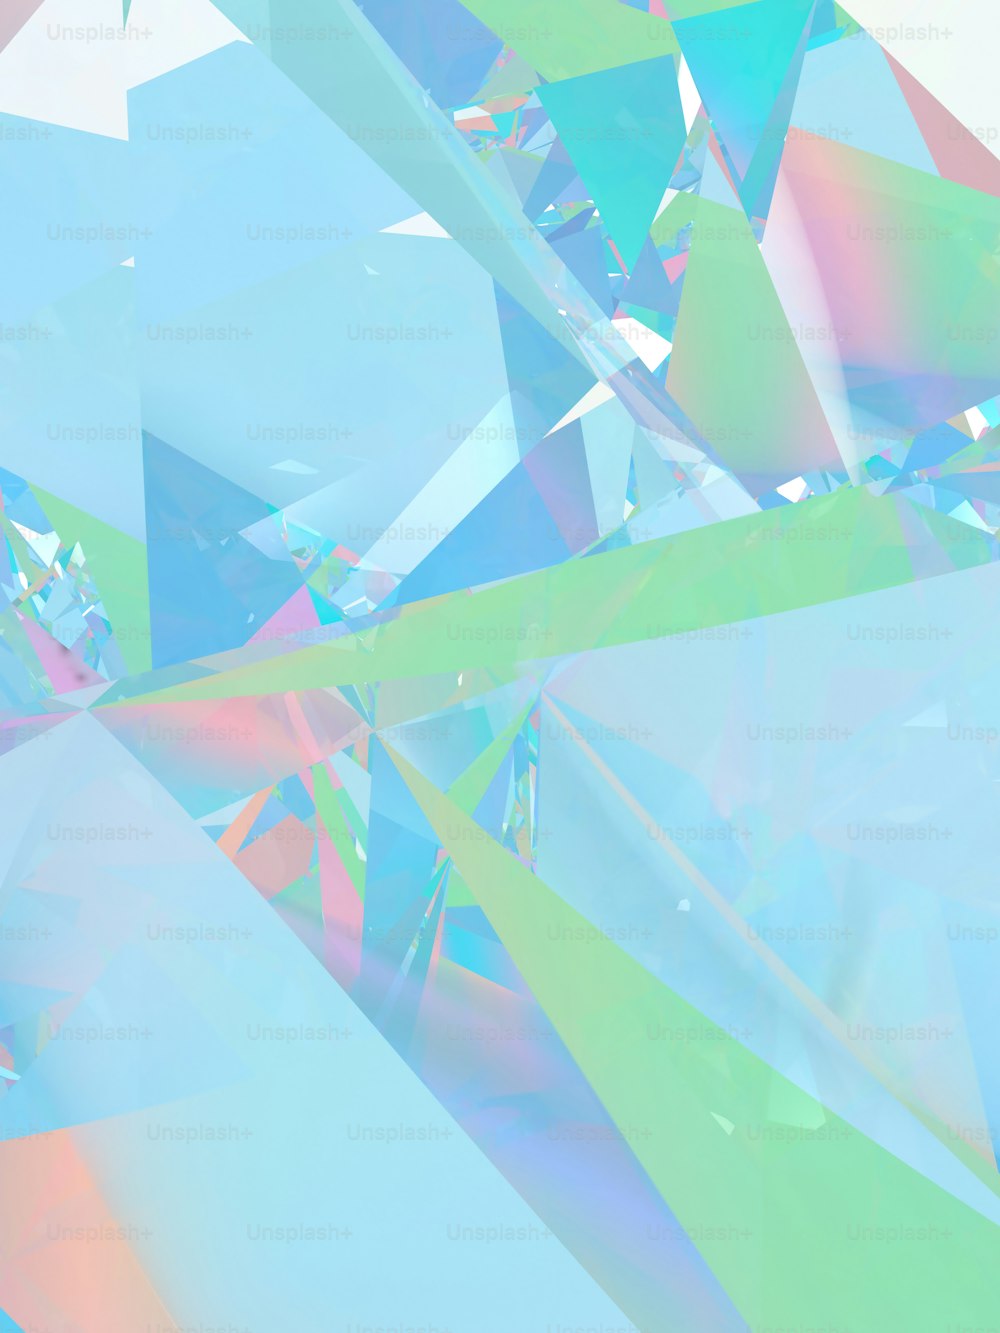 uma imagem multicolorida de um objeto semelhante a um diamante